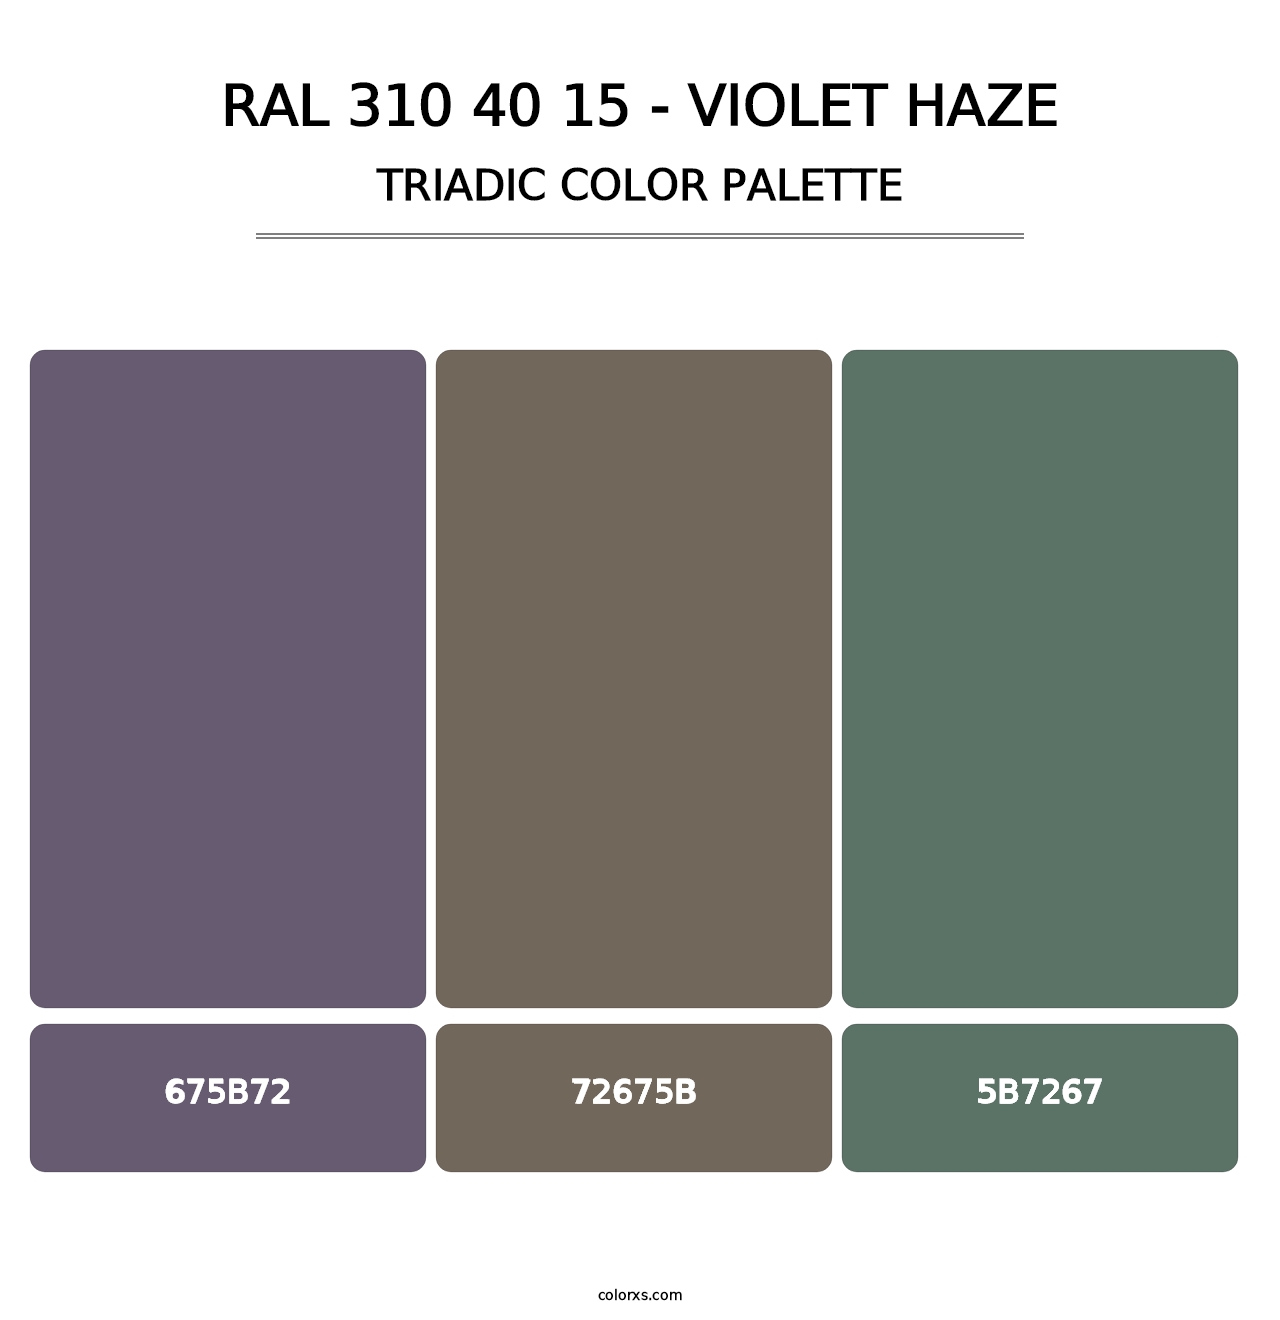 RAL 310 40 15 - Violet Haze - Triadic Color Palette